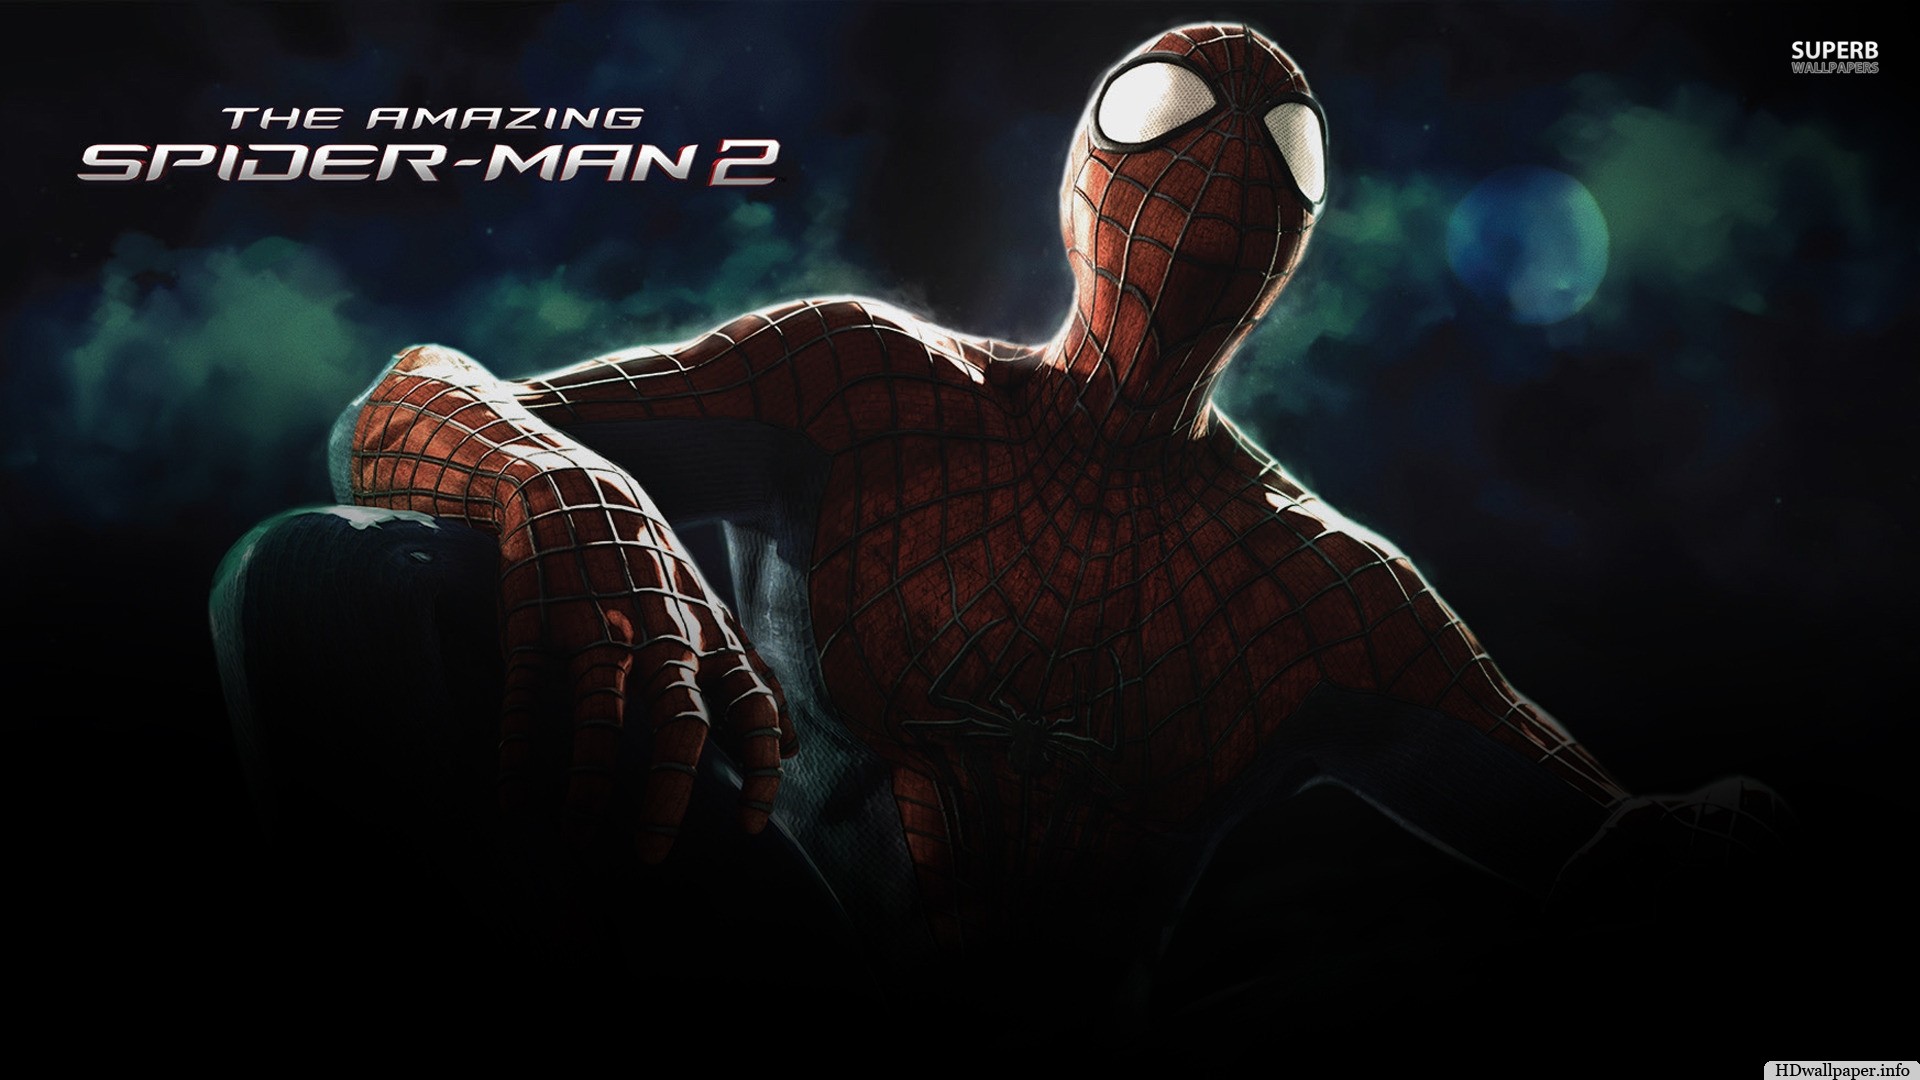 the amazing spider man 2 wallpaper hd 1080p – https://hdwallpaper.info